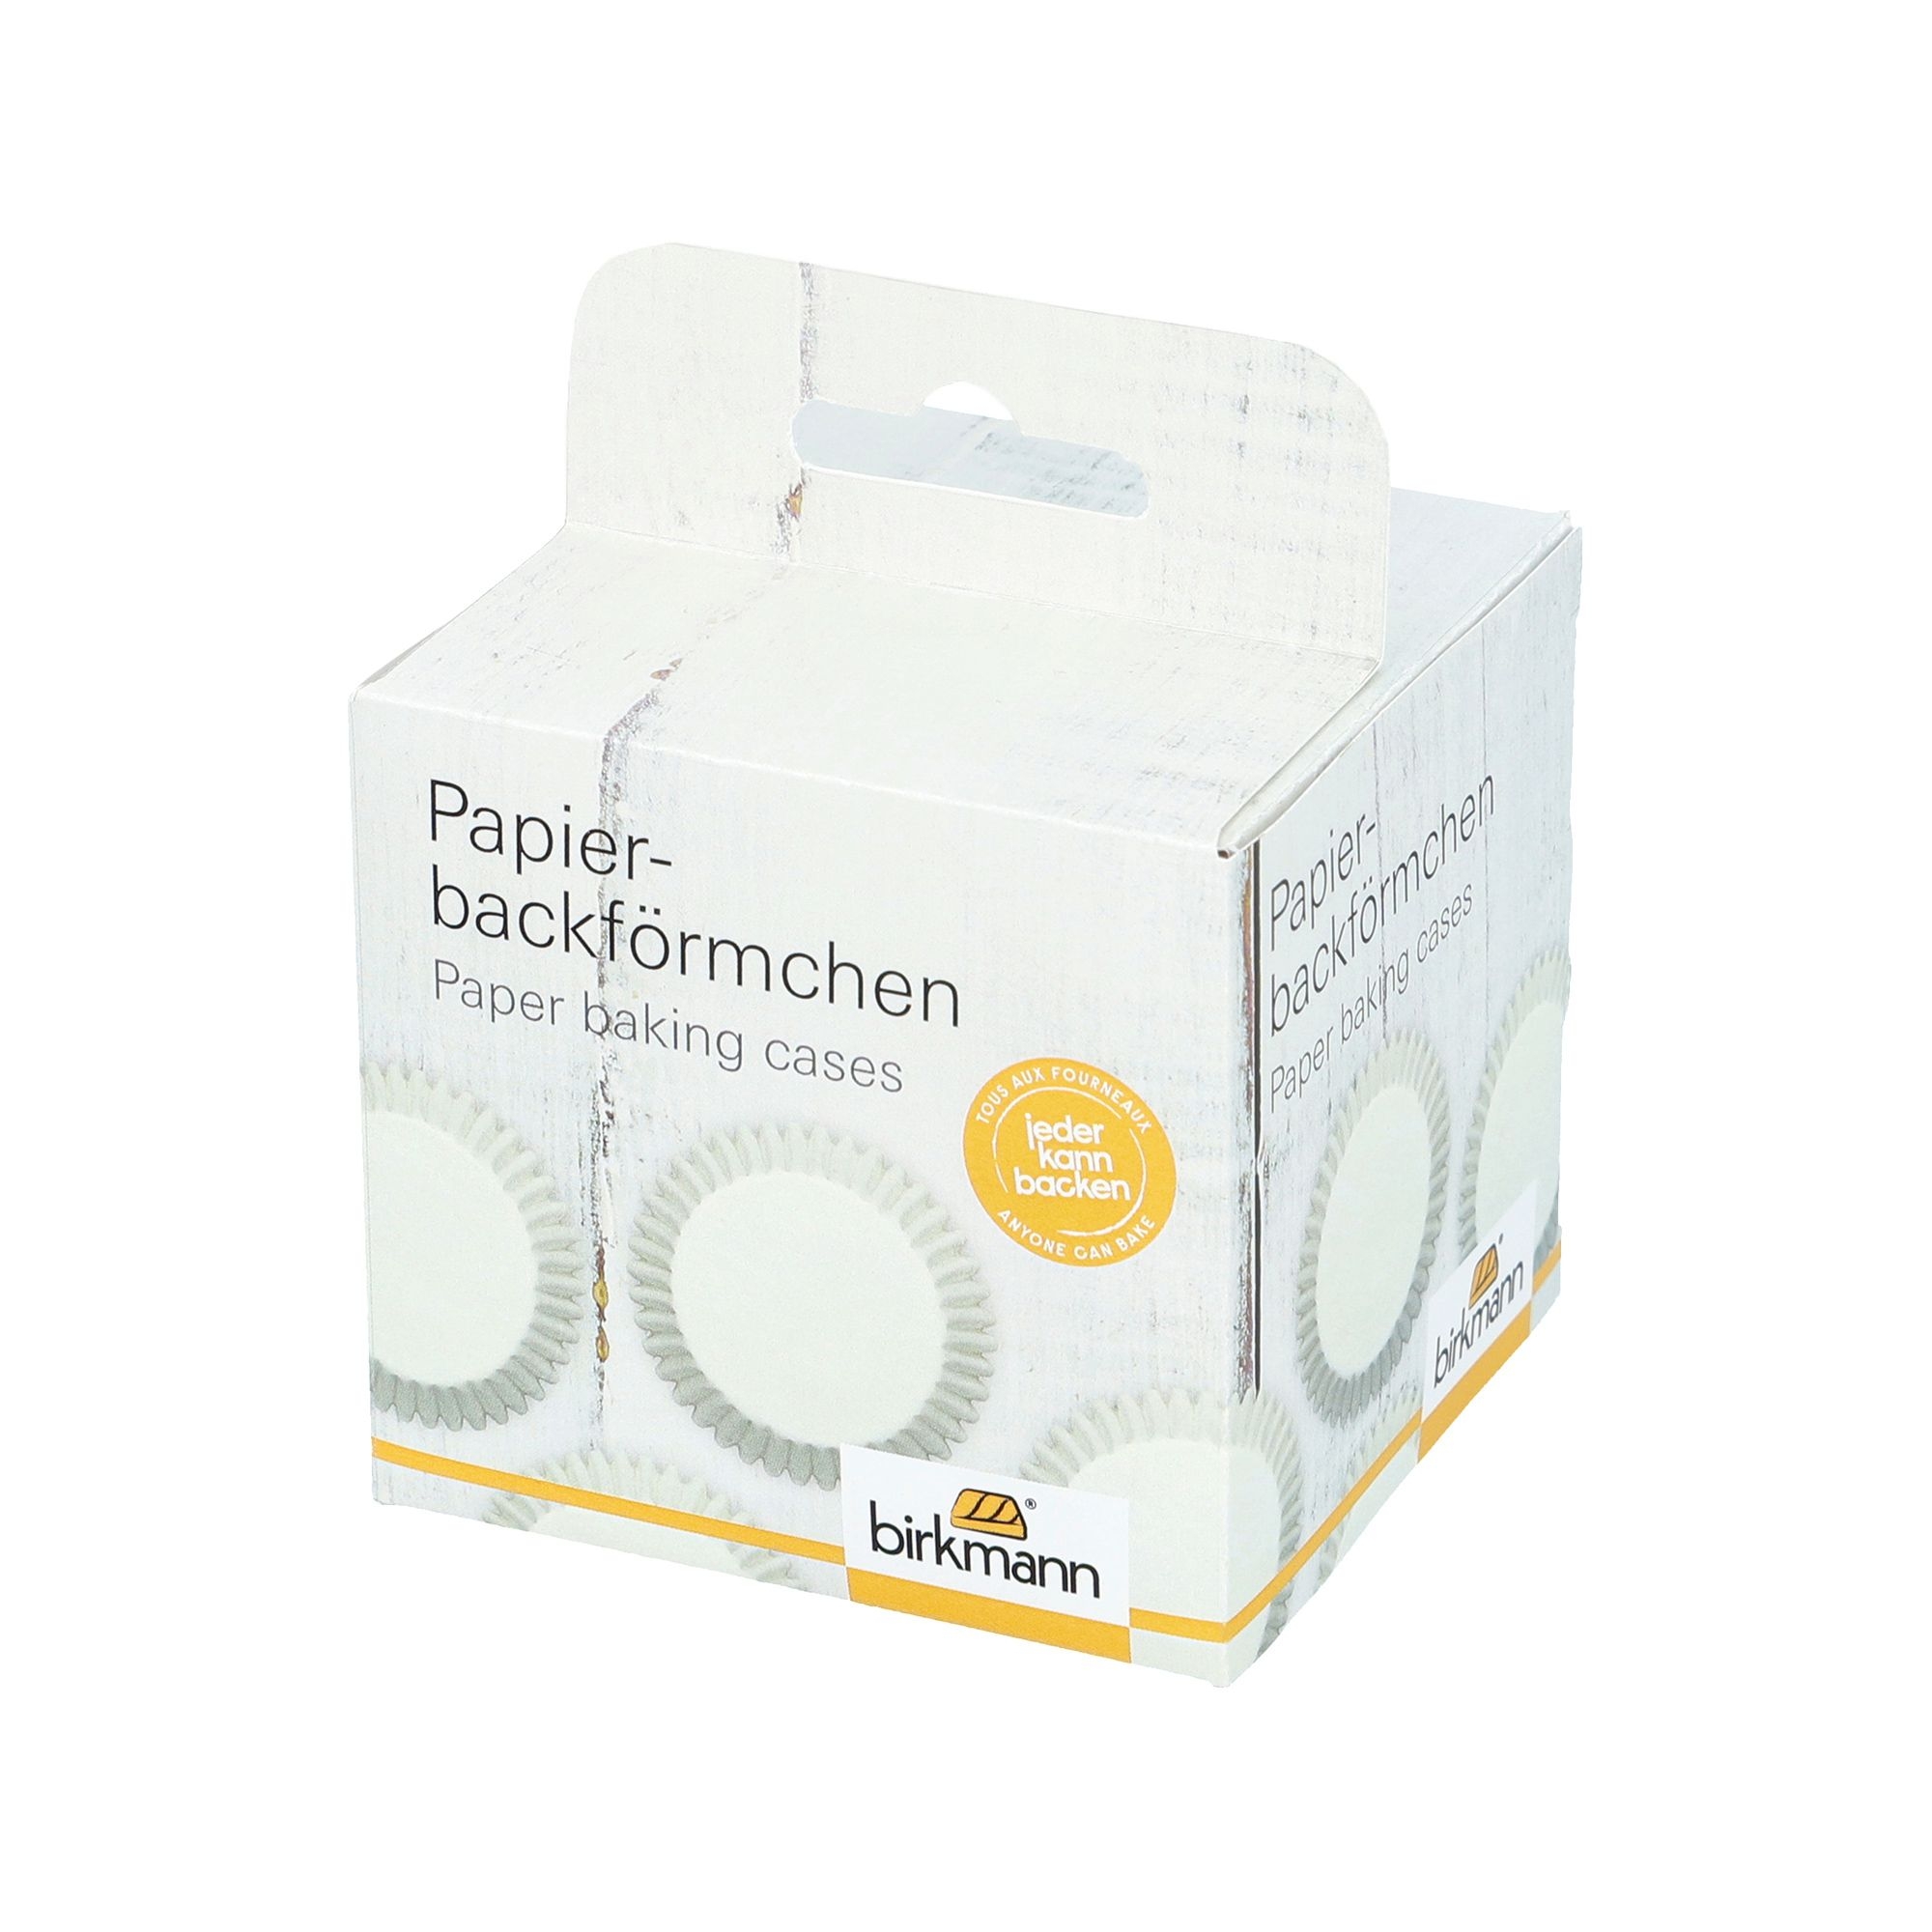 RBV Birkmann - Papierbackförmchen - 100 Stück - weiß